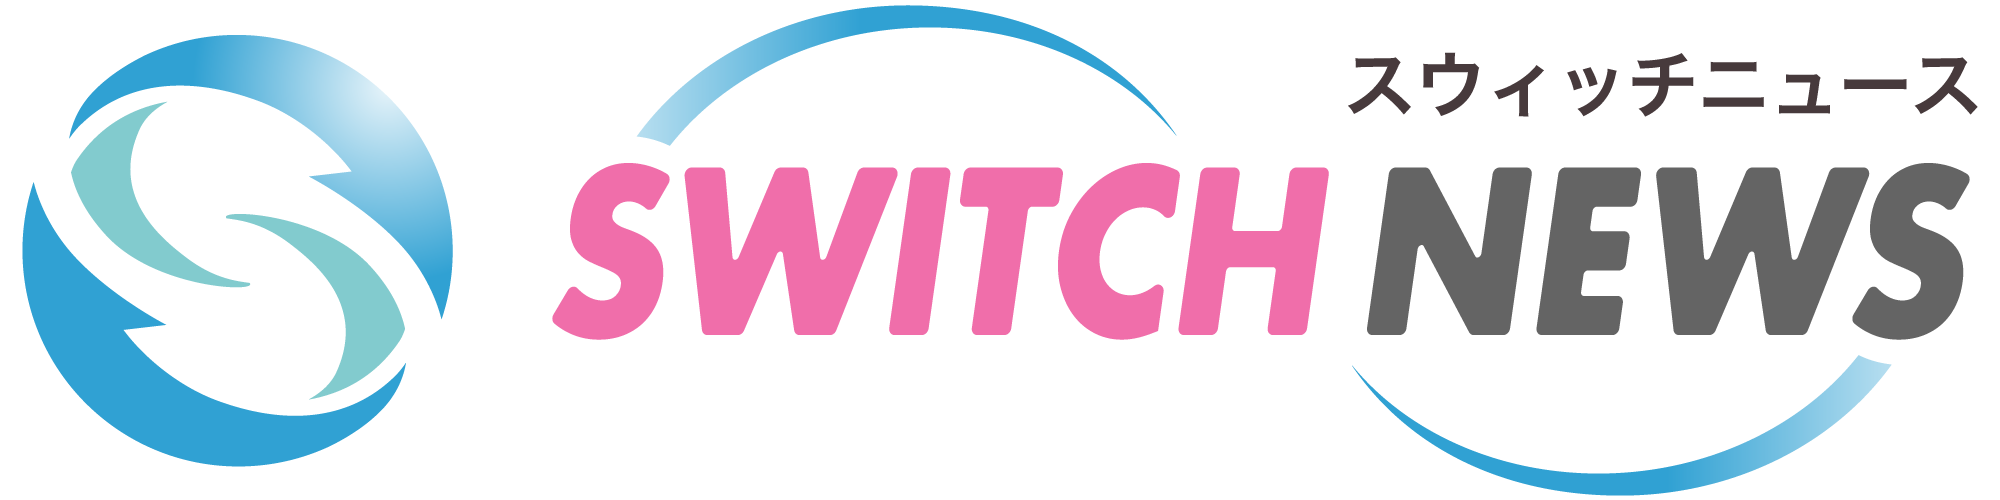 Switch news